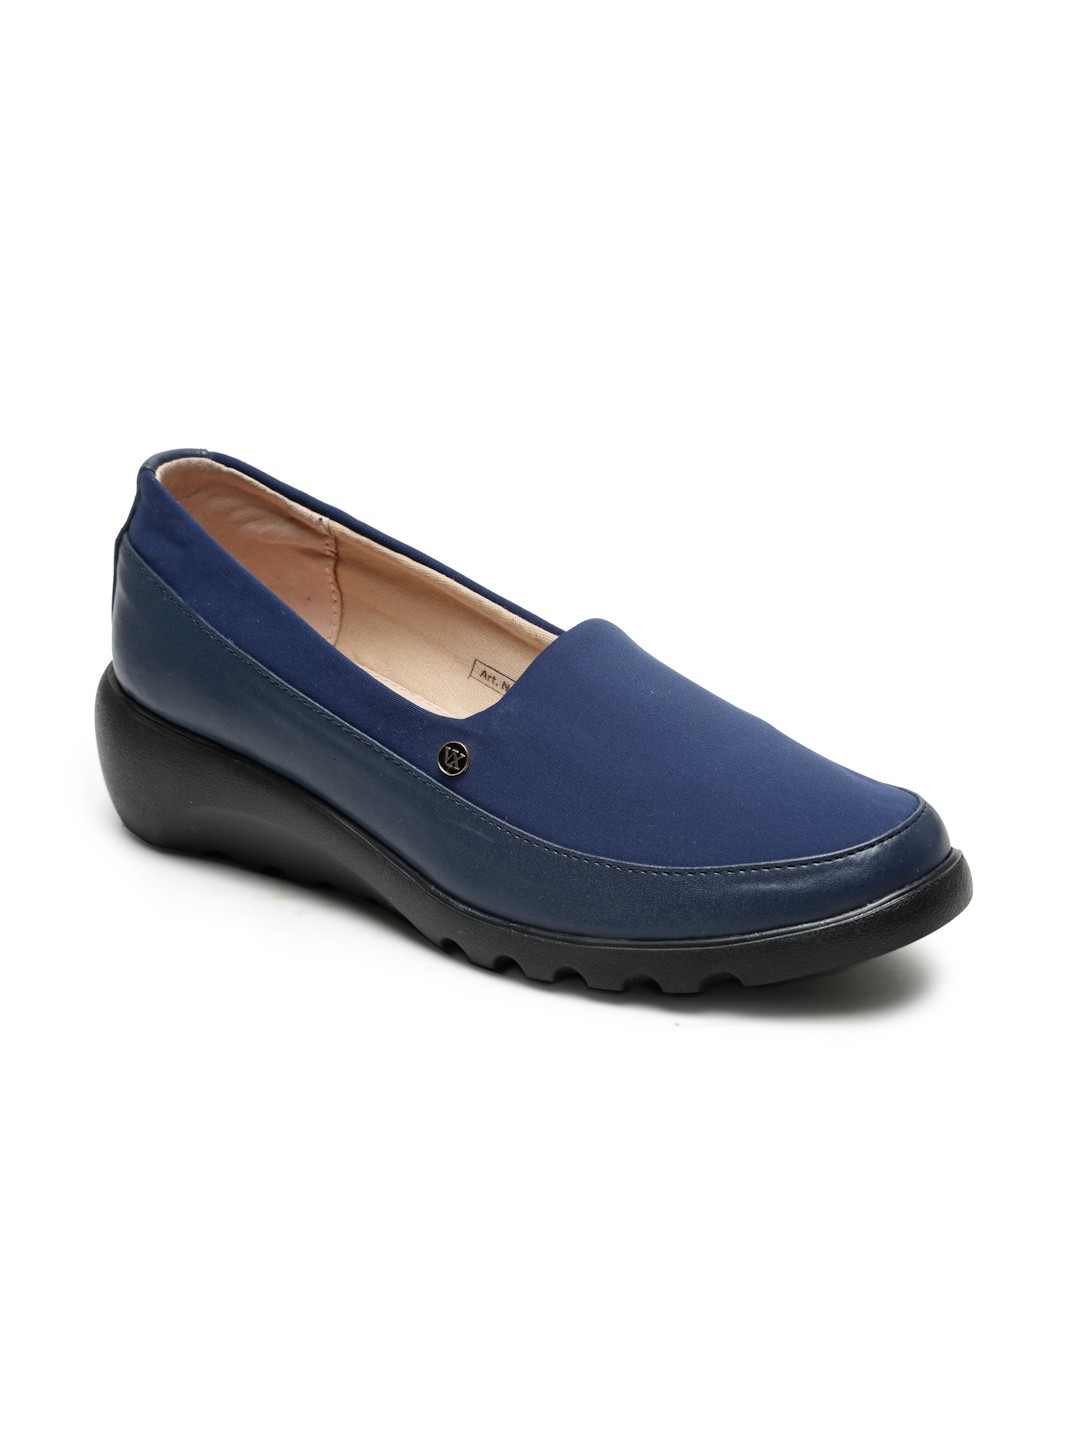 Buy Von Wellx Germany Comfort Women's Blue Casual Shoes Elsa Online in Dehradun